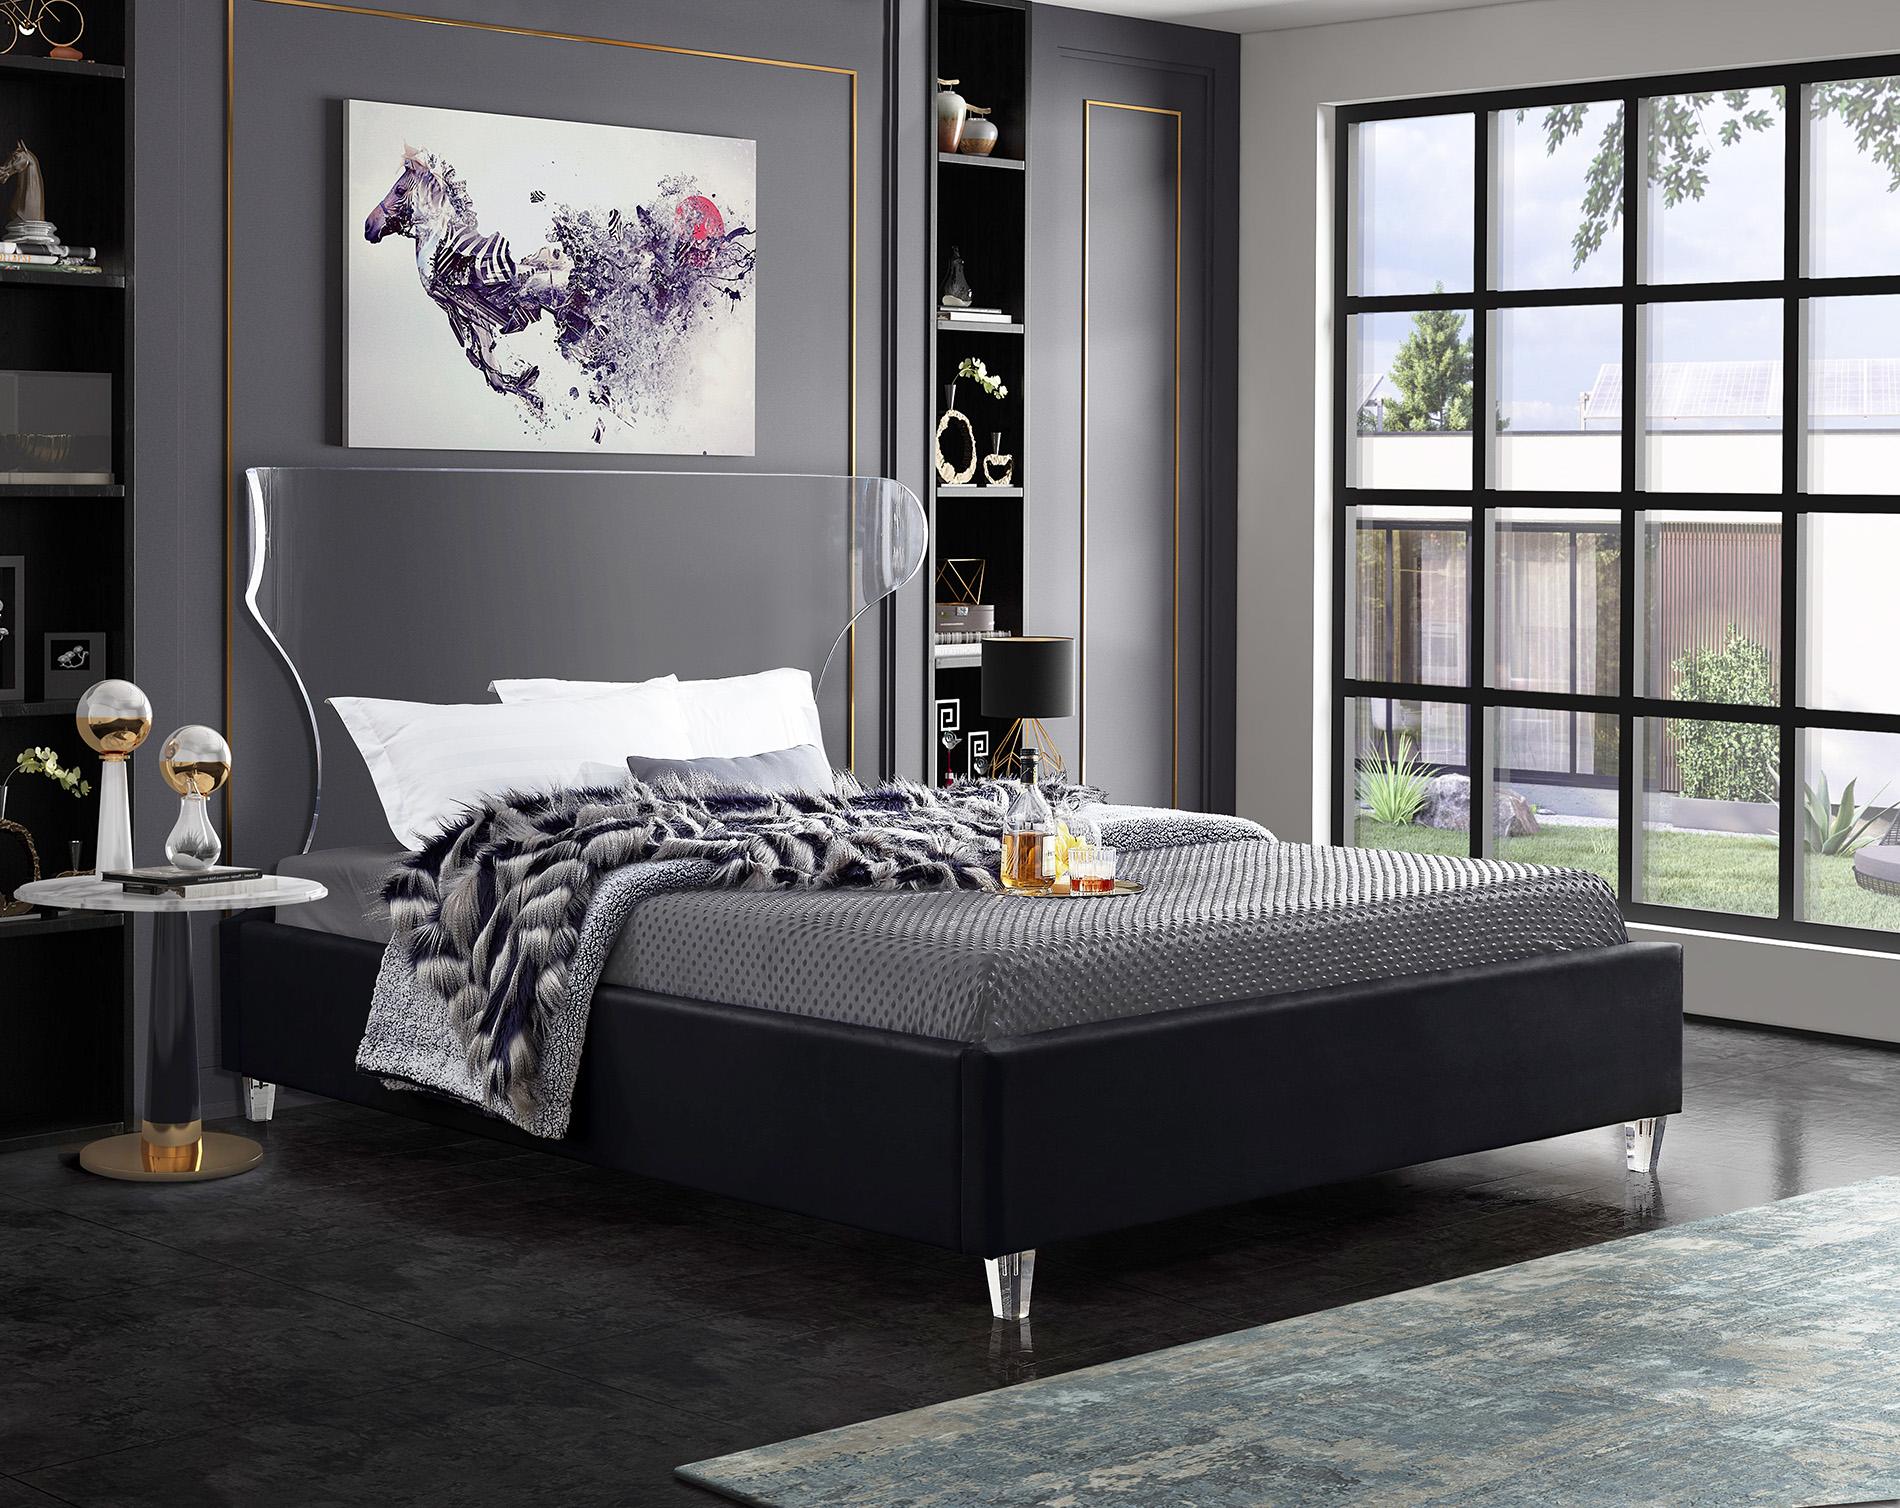 

    
GhostBlack-F Meridian Furniture Platform Bed
